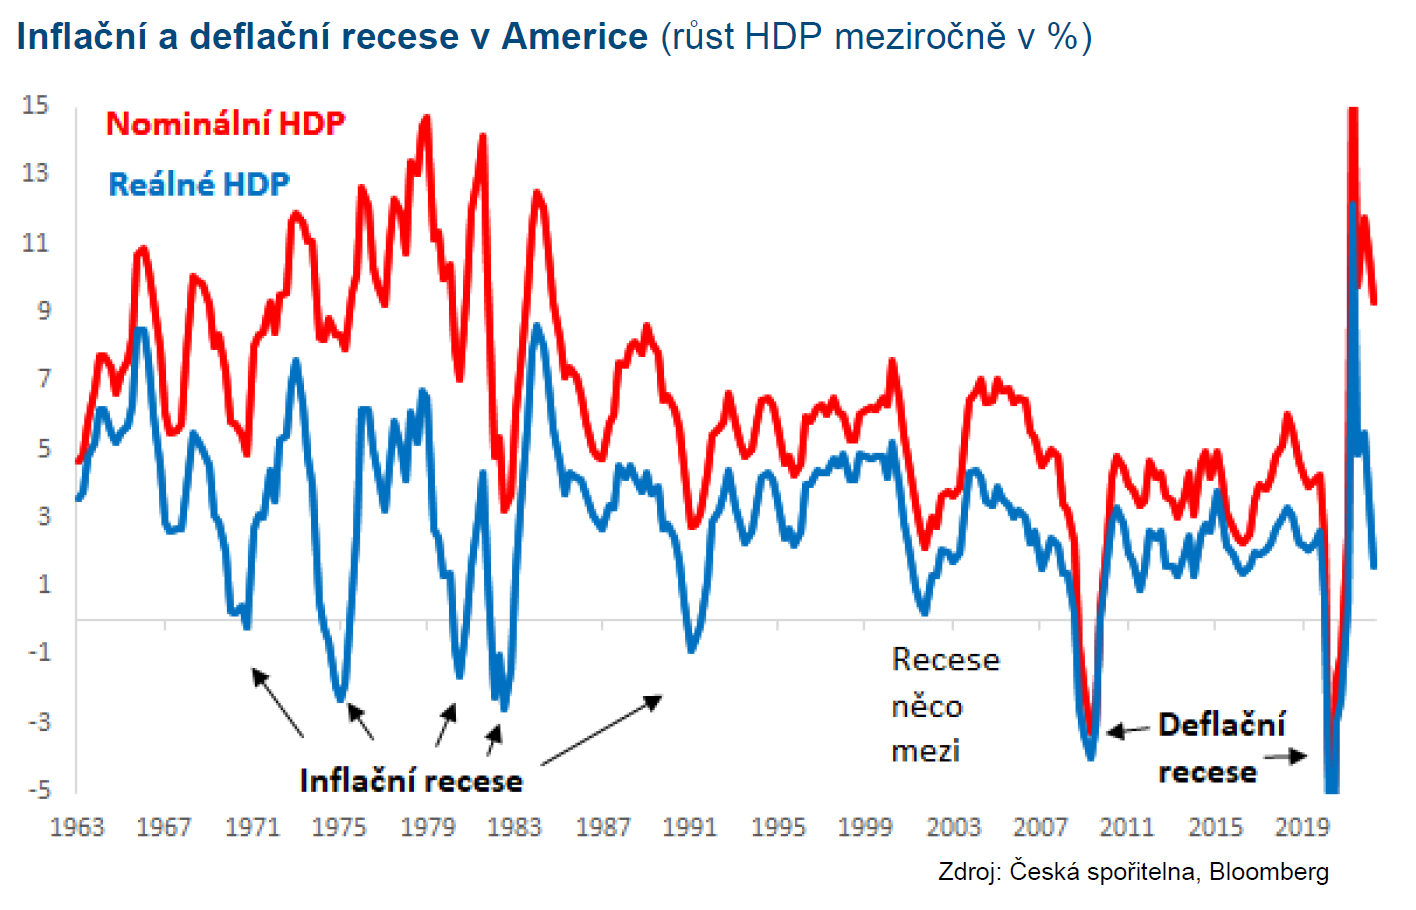 Inflační a deflační recese v USA